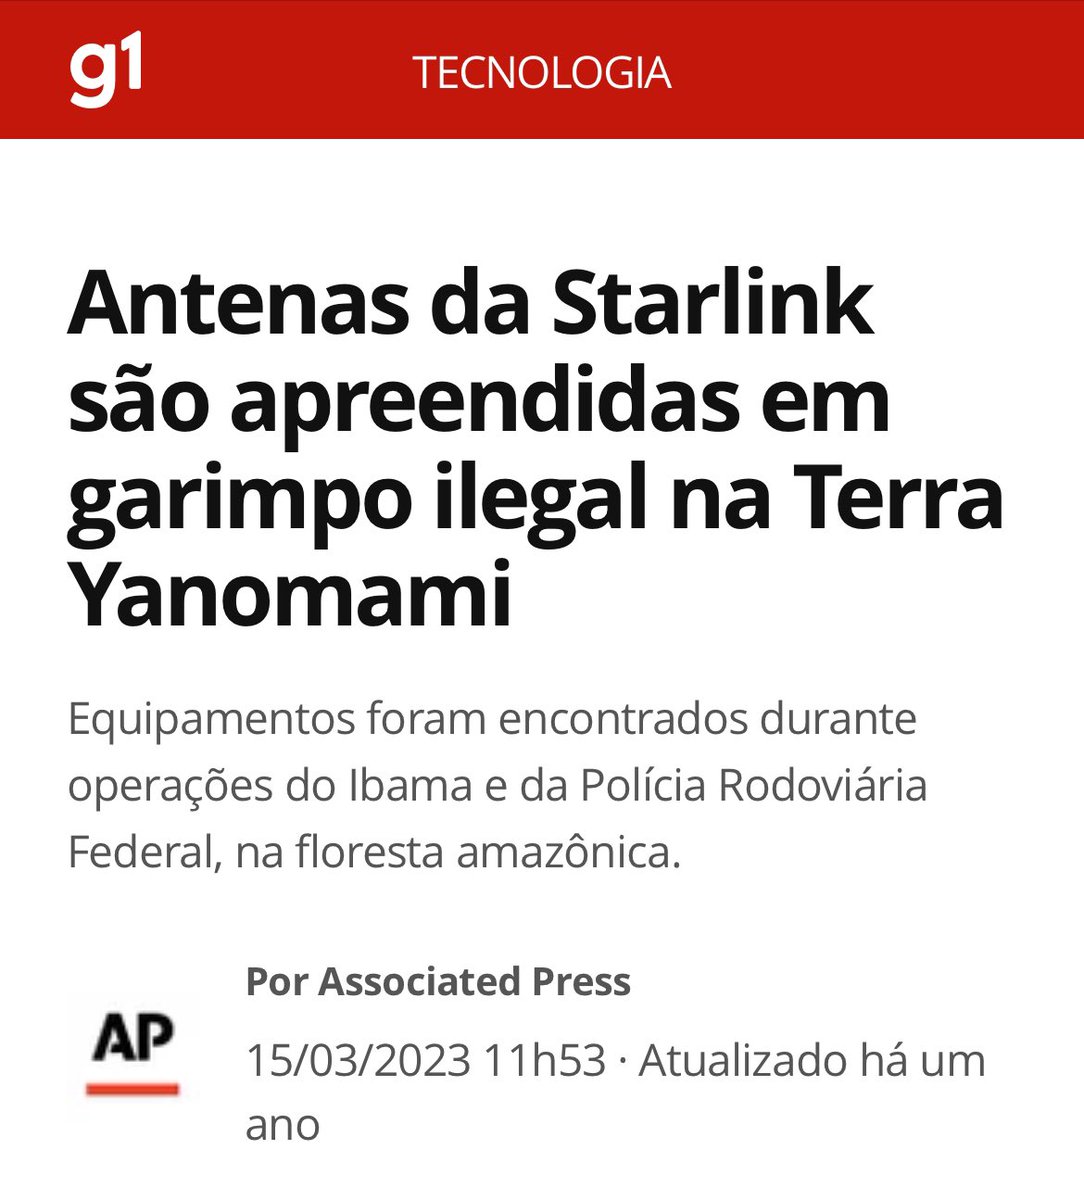 Lembrando a todos qual é a única utilidade que o Starlink ganhou no Brasil nos últimos anos